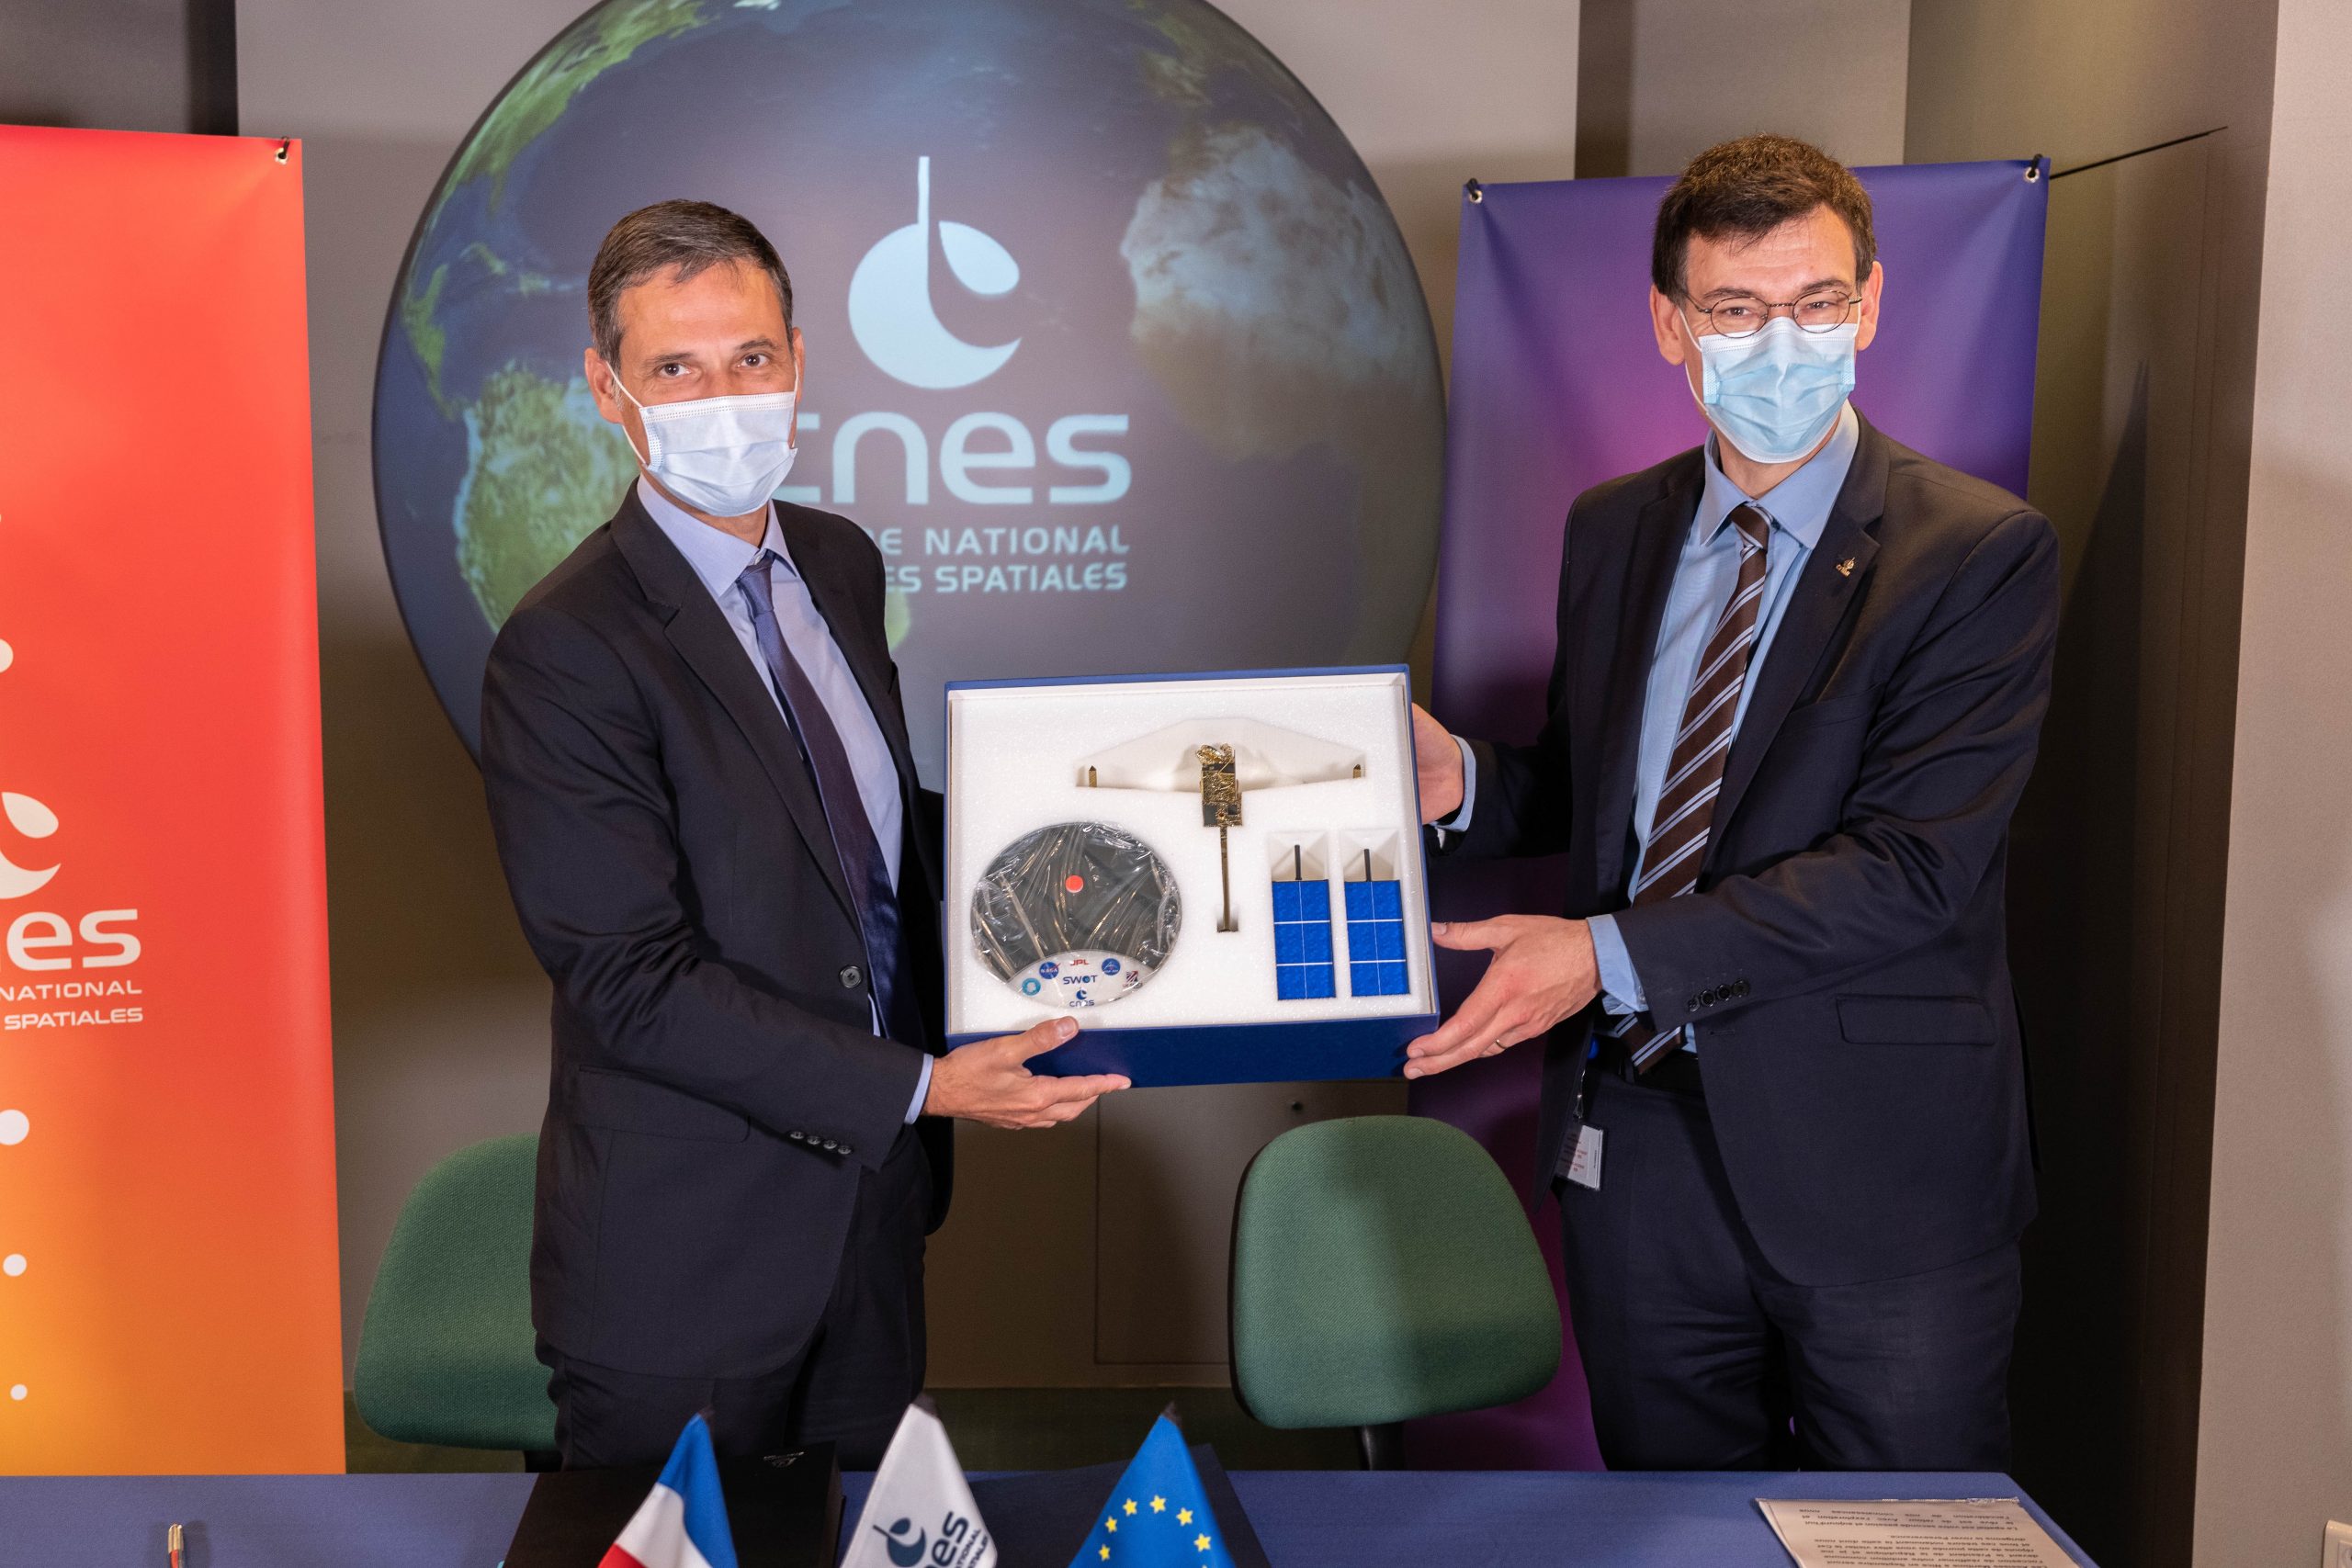 Le CNES et le groupe CMA CGM signent un partenariat inédit pour l’émergence de solutions innovantes pour le transport maritime, la logistique et l’activité spatiale